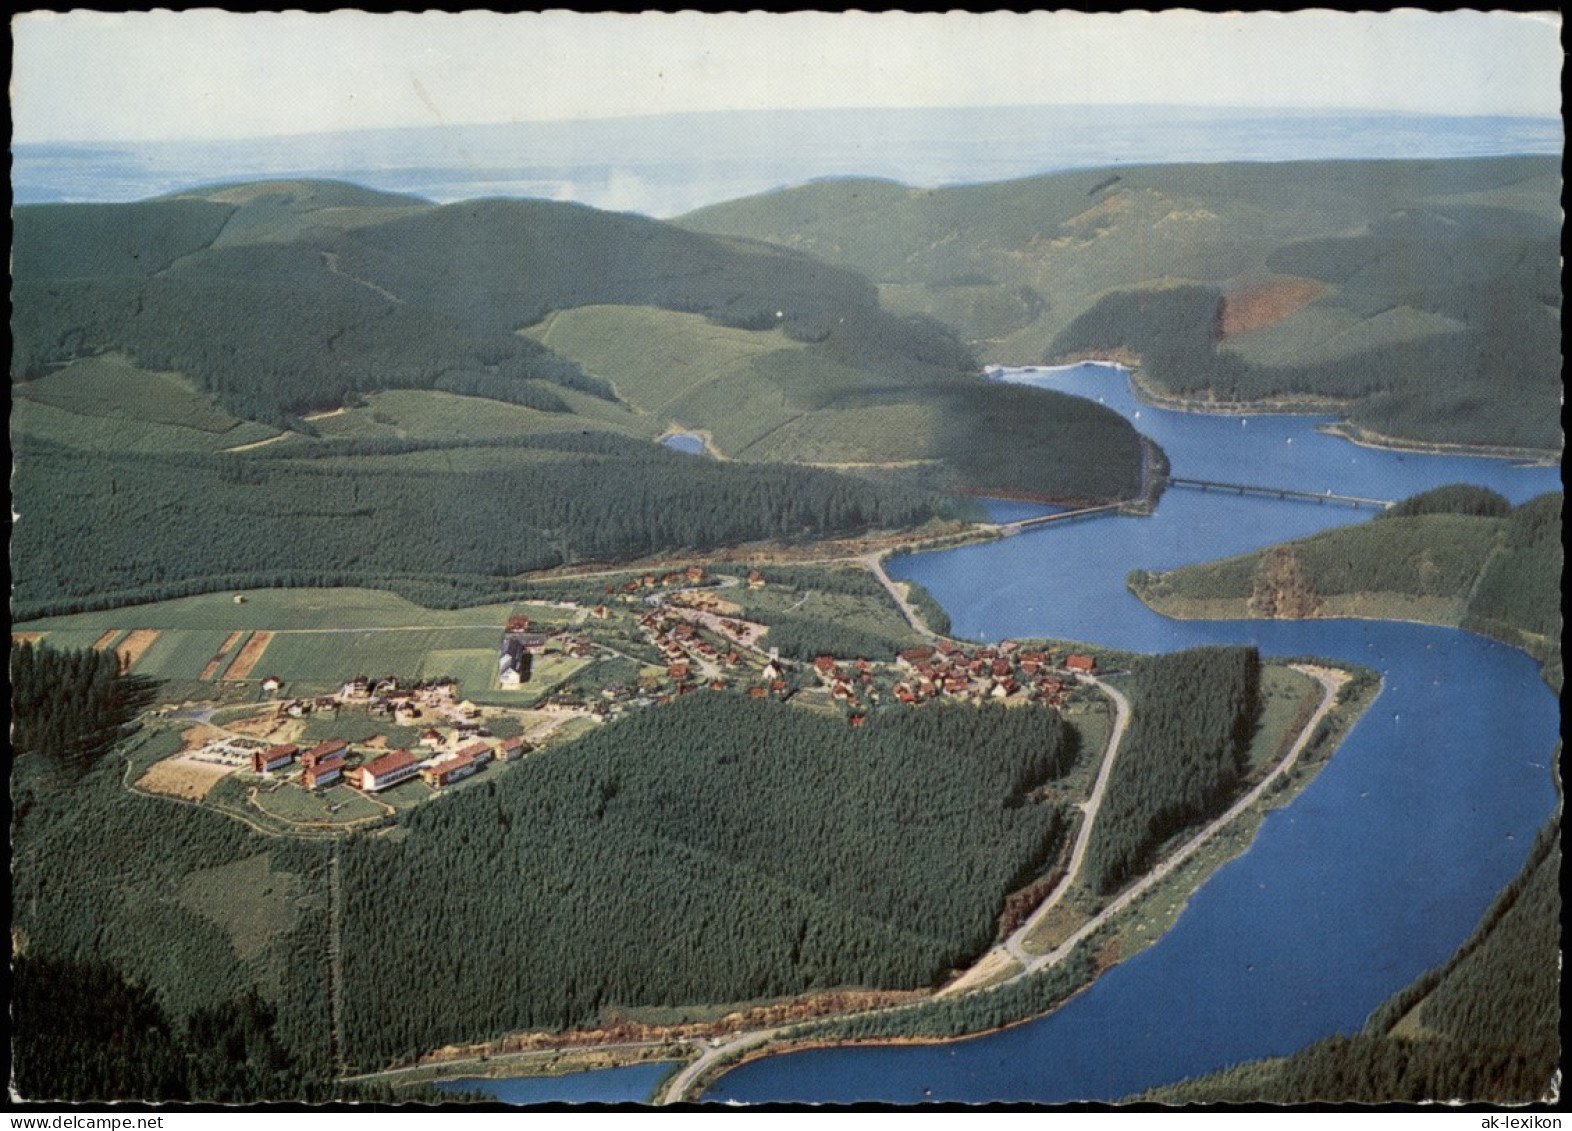 Altenau-Clausthal-Zellerfeld Luftbild Schulenberg Mit Okertalsperre 1976 - Altenau